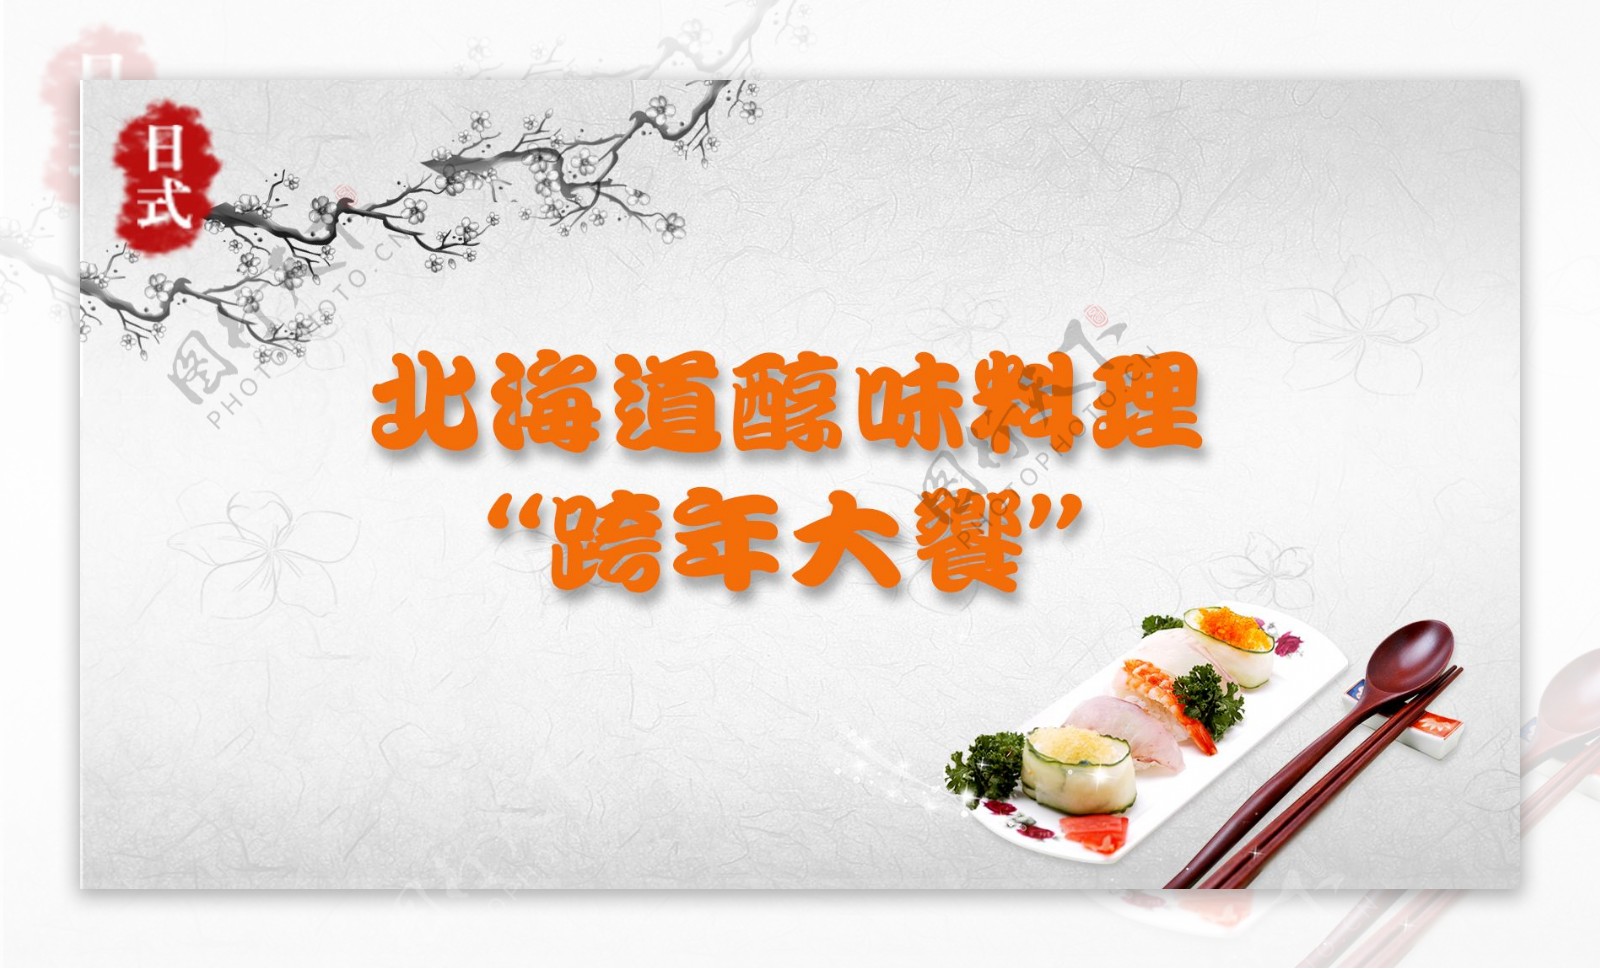 日式寿司广告画面